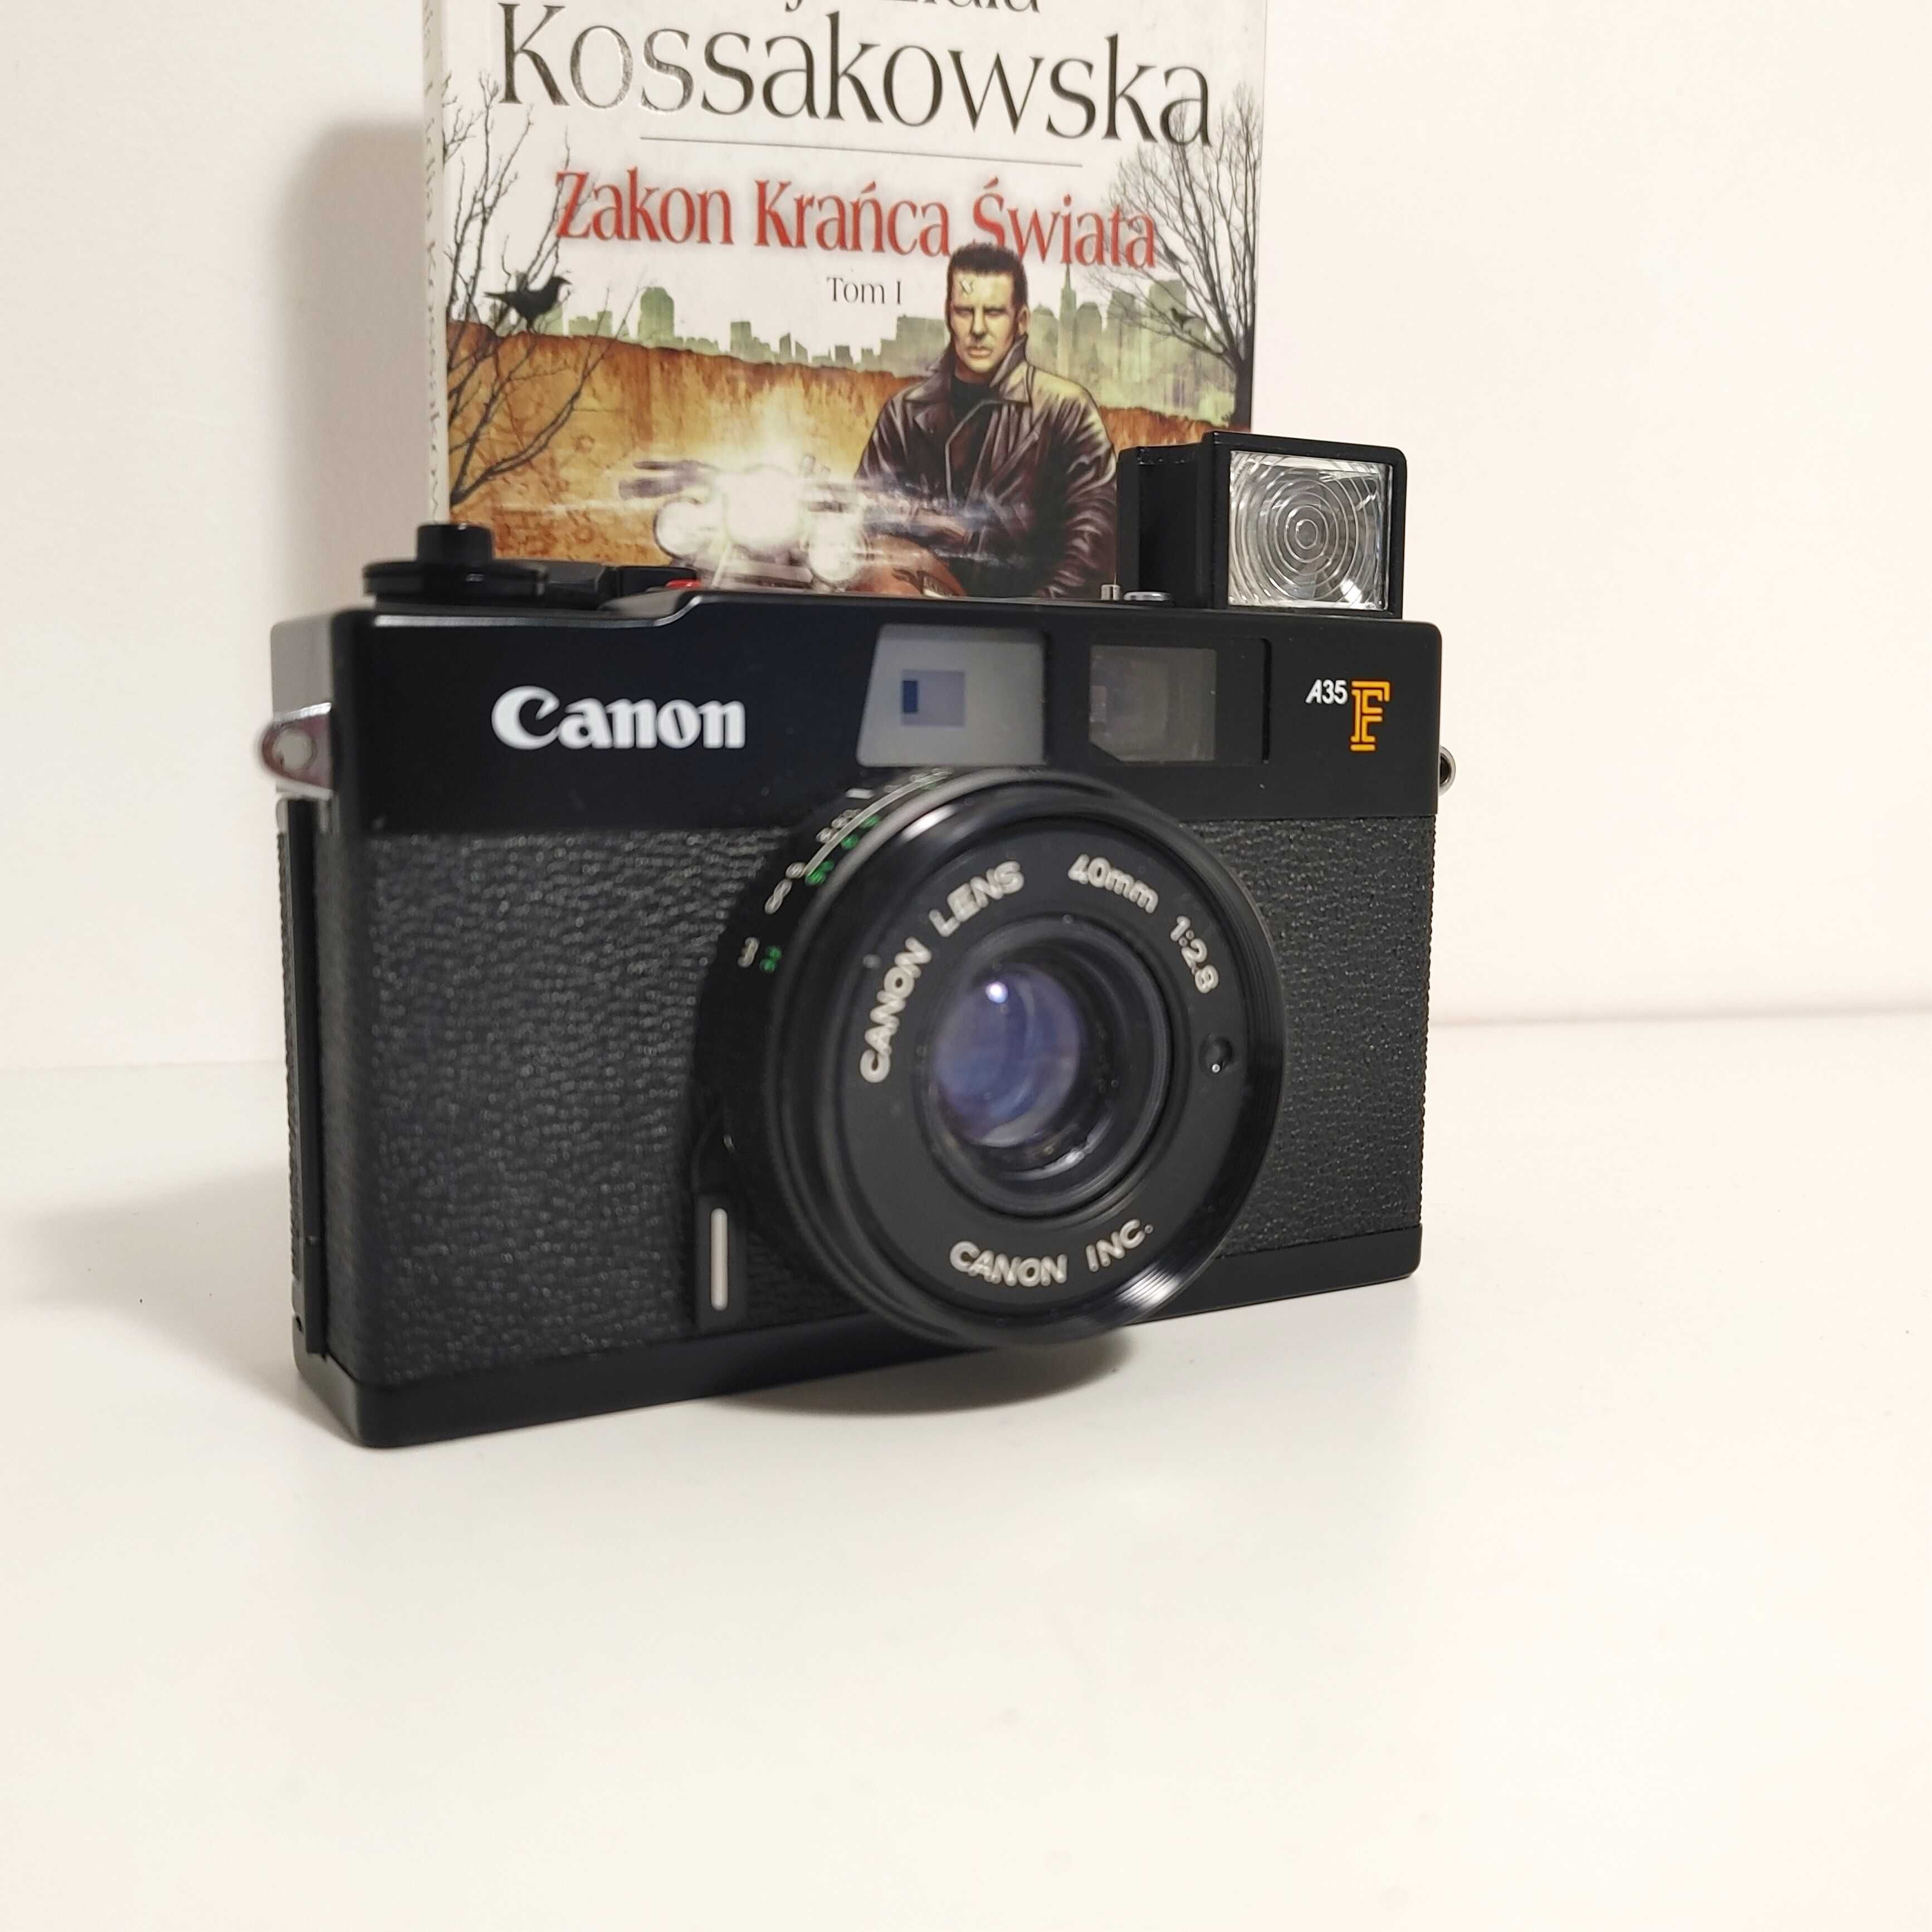 Dalmierzowy aparat fotograficzny Canon A35F  z obiektywem 1:2,8 40 mm